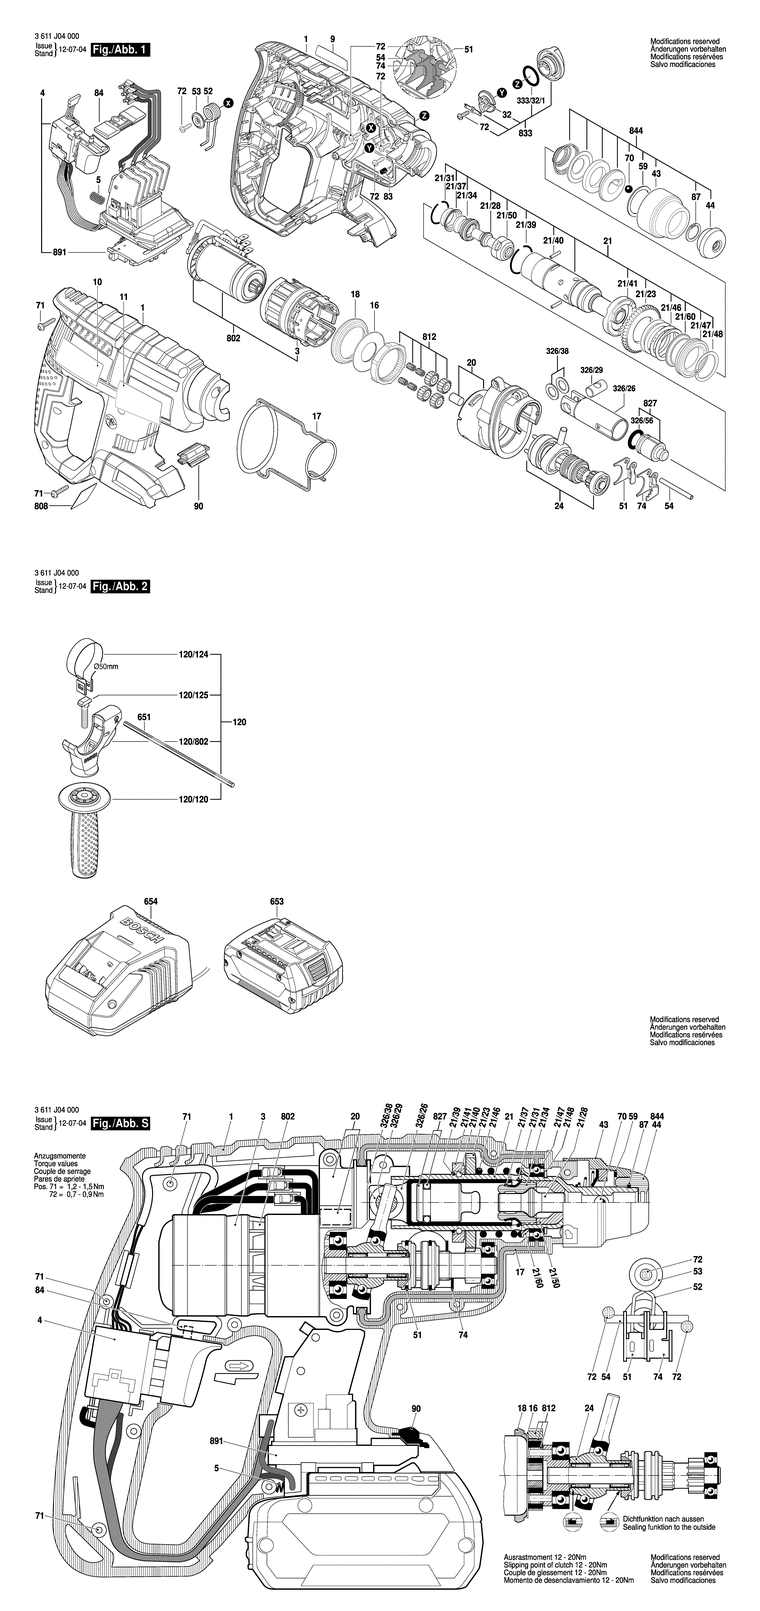 Запчасти, схема и деталировка Bosch GBH 18 V-EC (ТИП 3611J04000) (ЧАСТЬ 1)